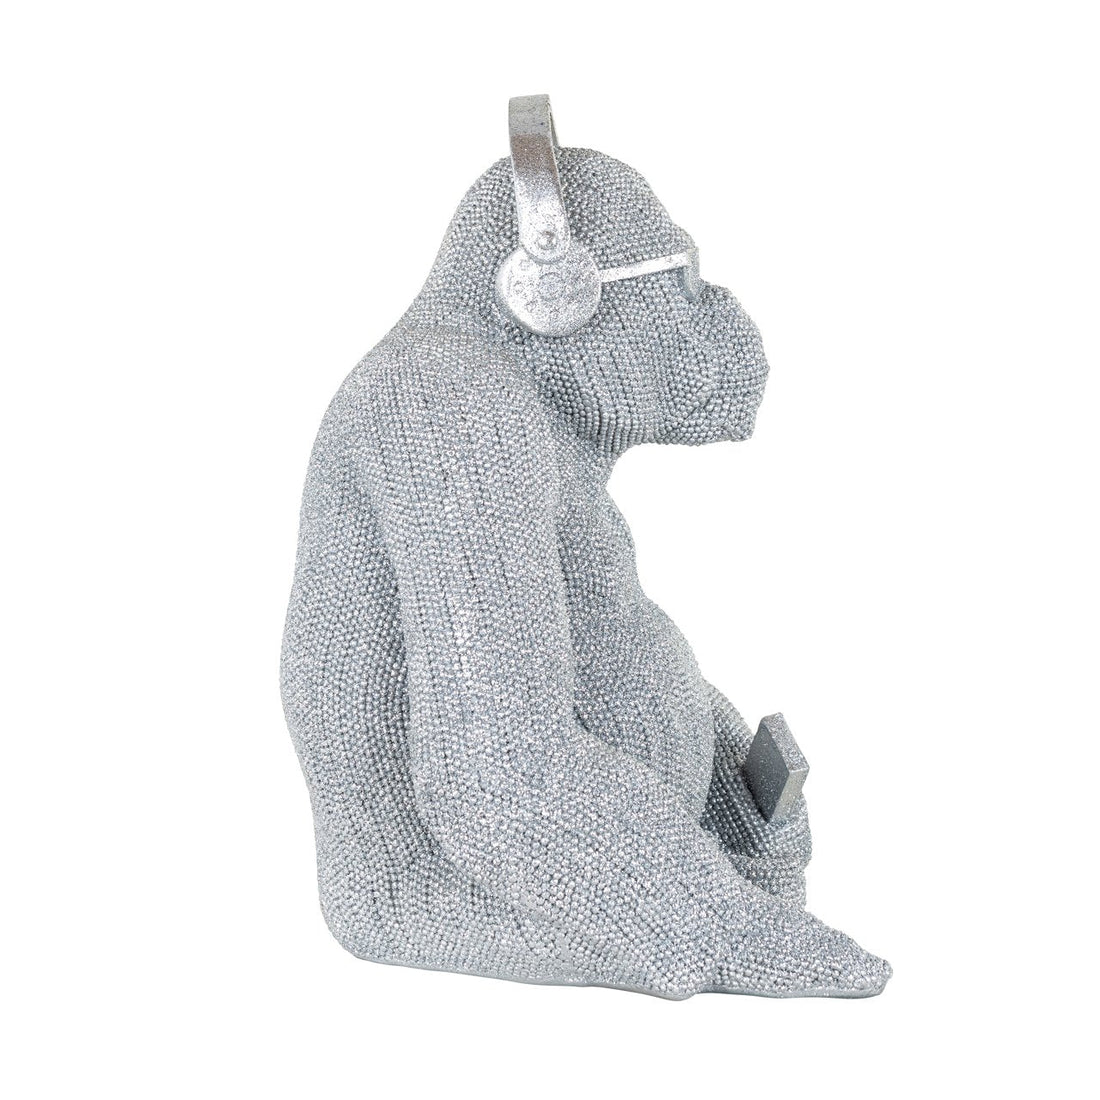 Zijaanzicht van gorilla sculptuur in zilver polyresin met koptelefoon